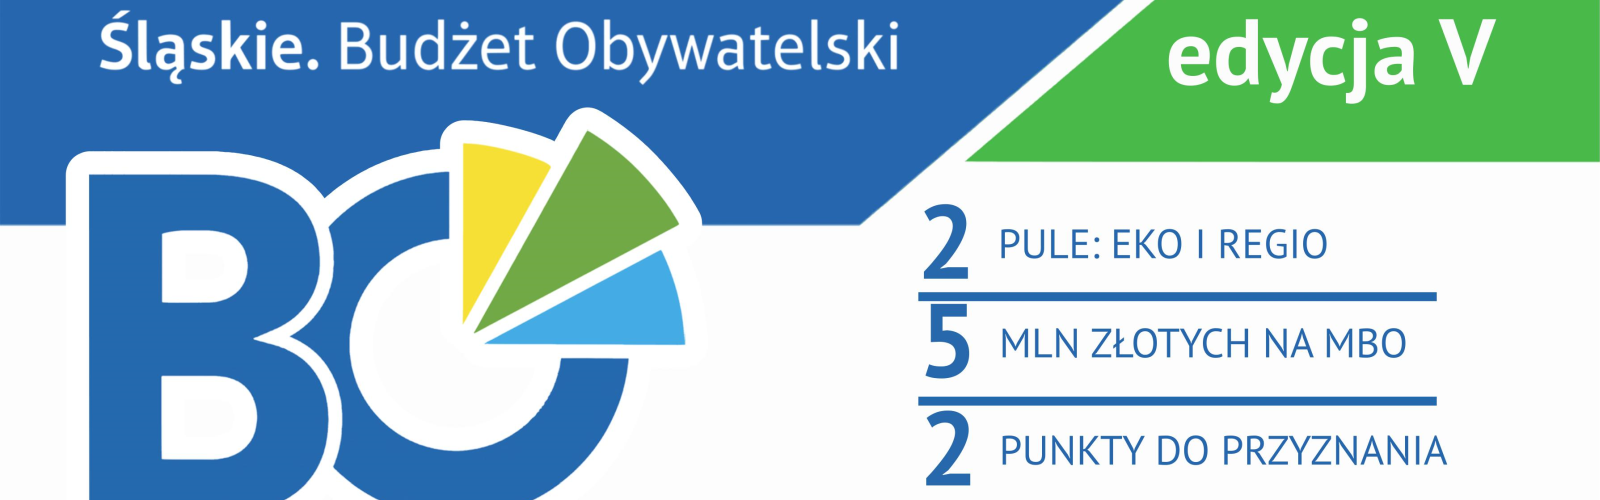 Baner z informacją V edycji Marszałkowskiego Budżetu Obywatelskiego